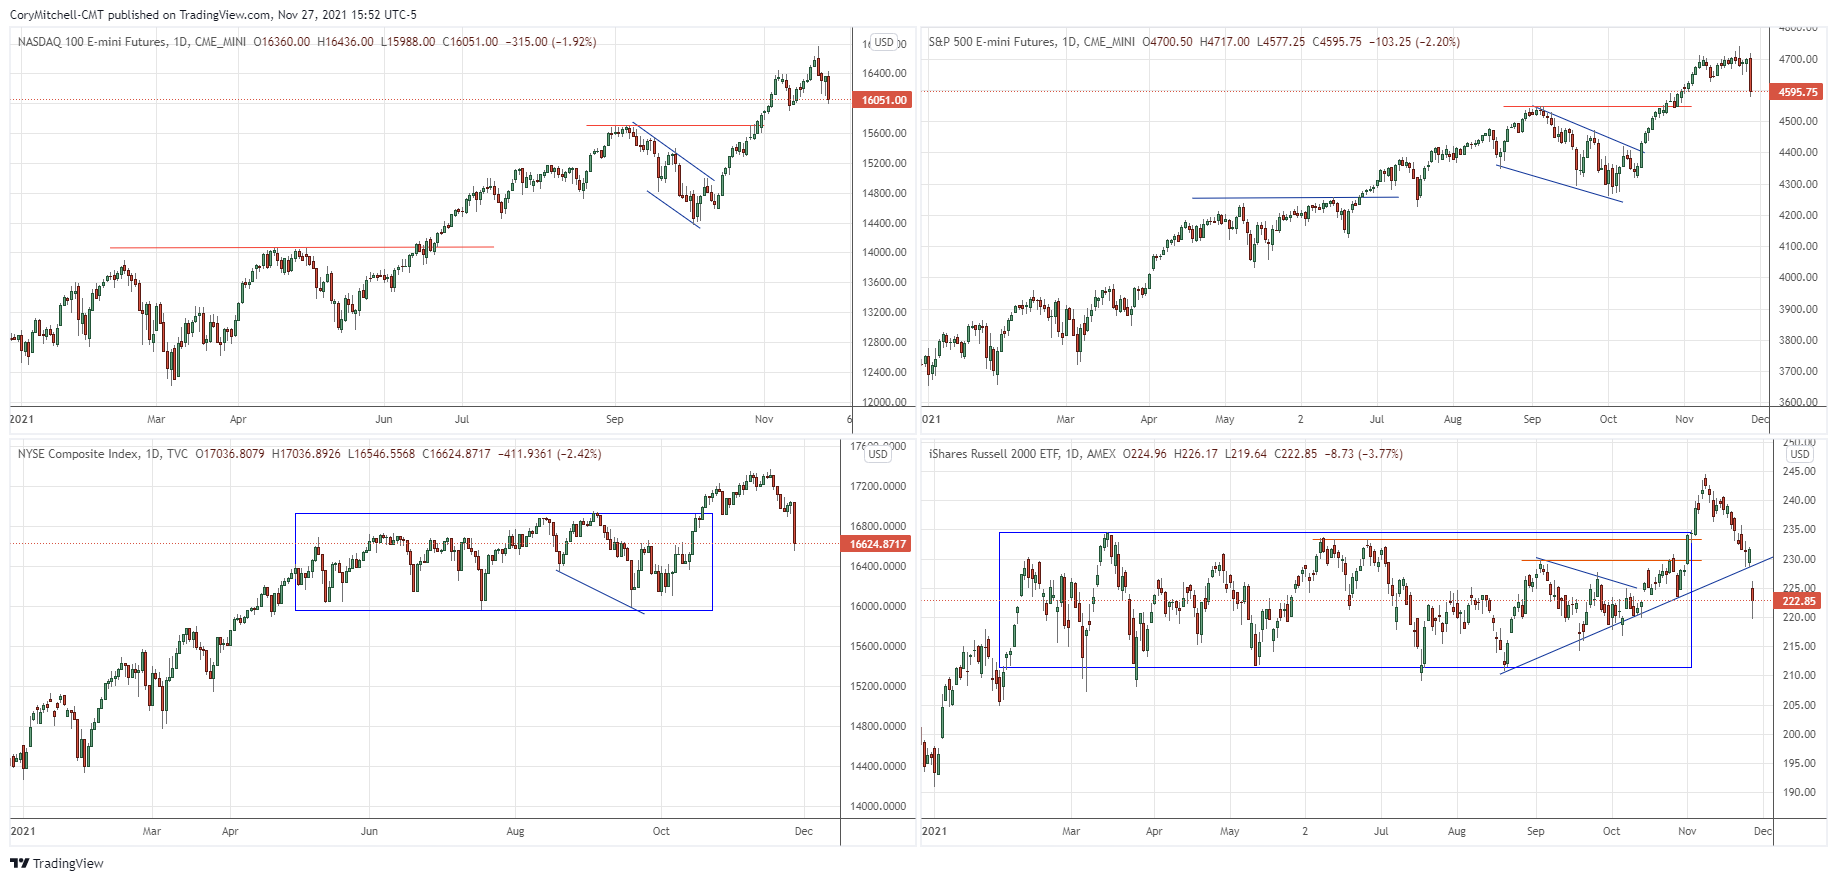 stock index comparison nov. 27